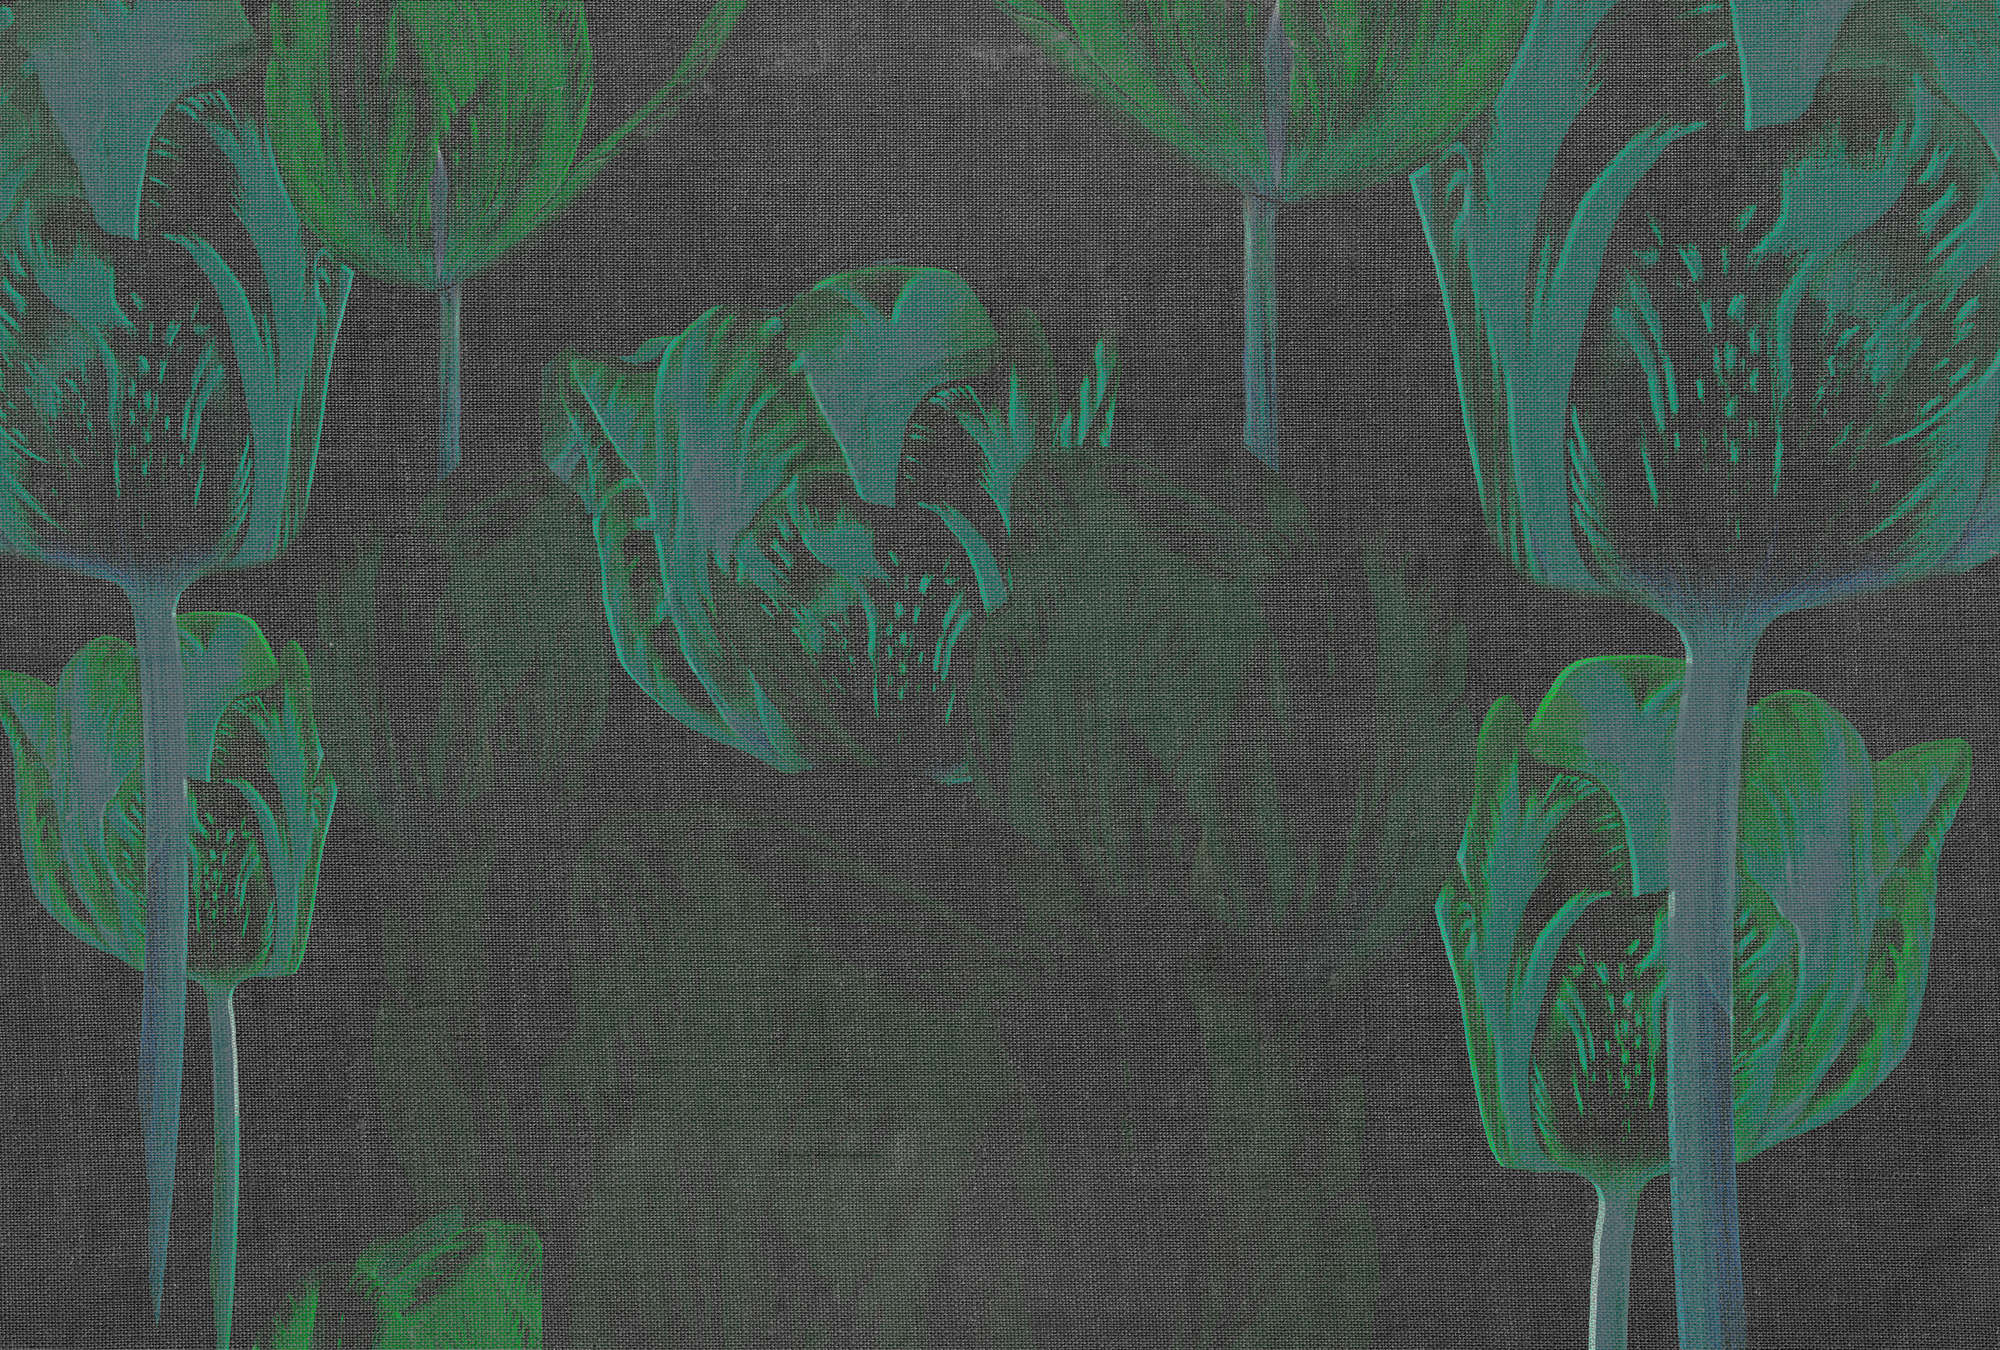             Dark mural tulips, flowers in striking colours - green, black, grey
        